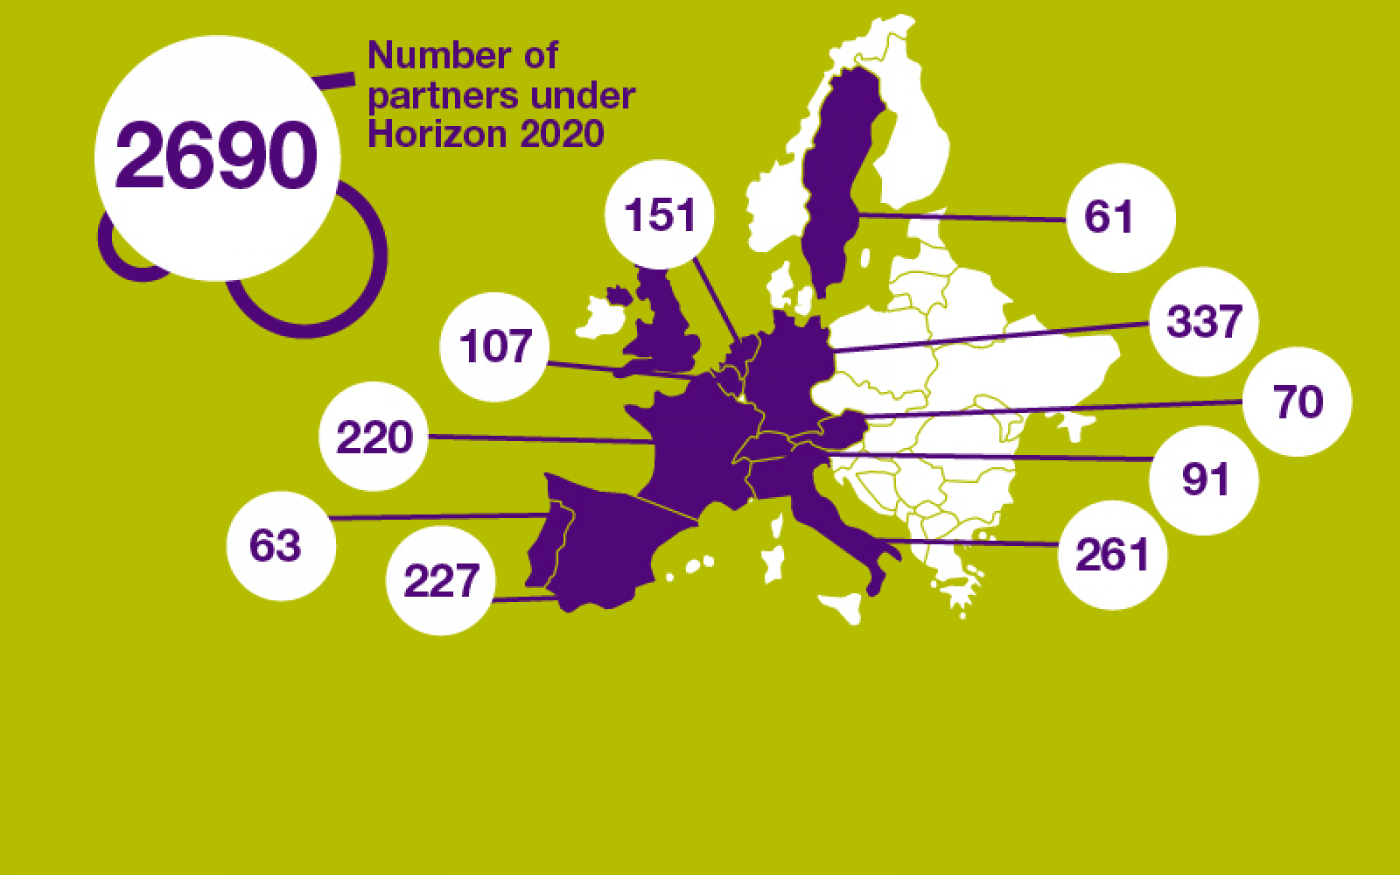 UCL EU Horizon 2020 Partners